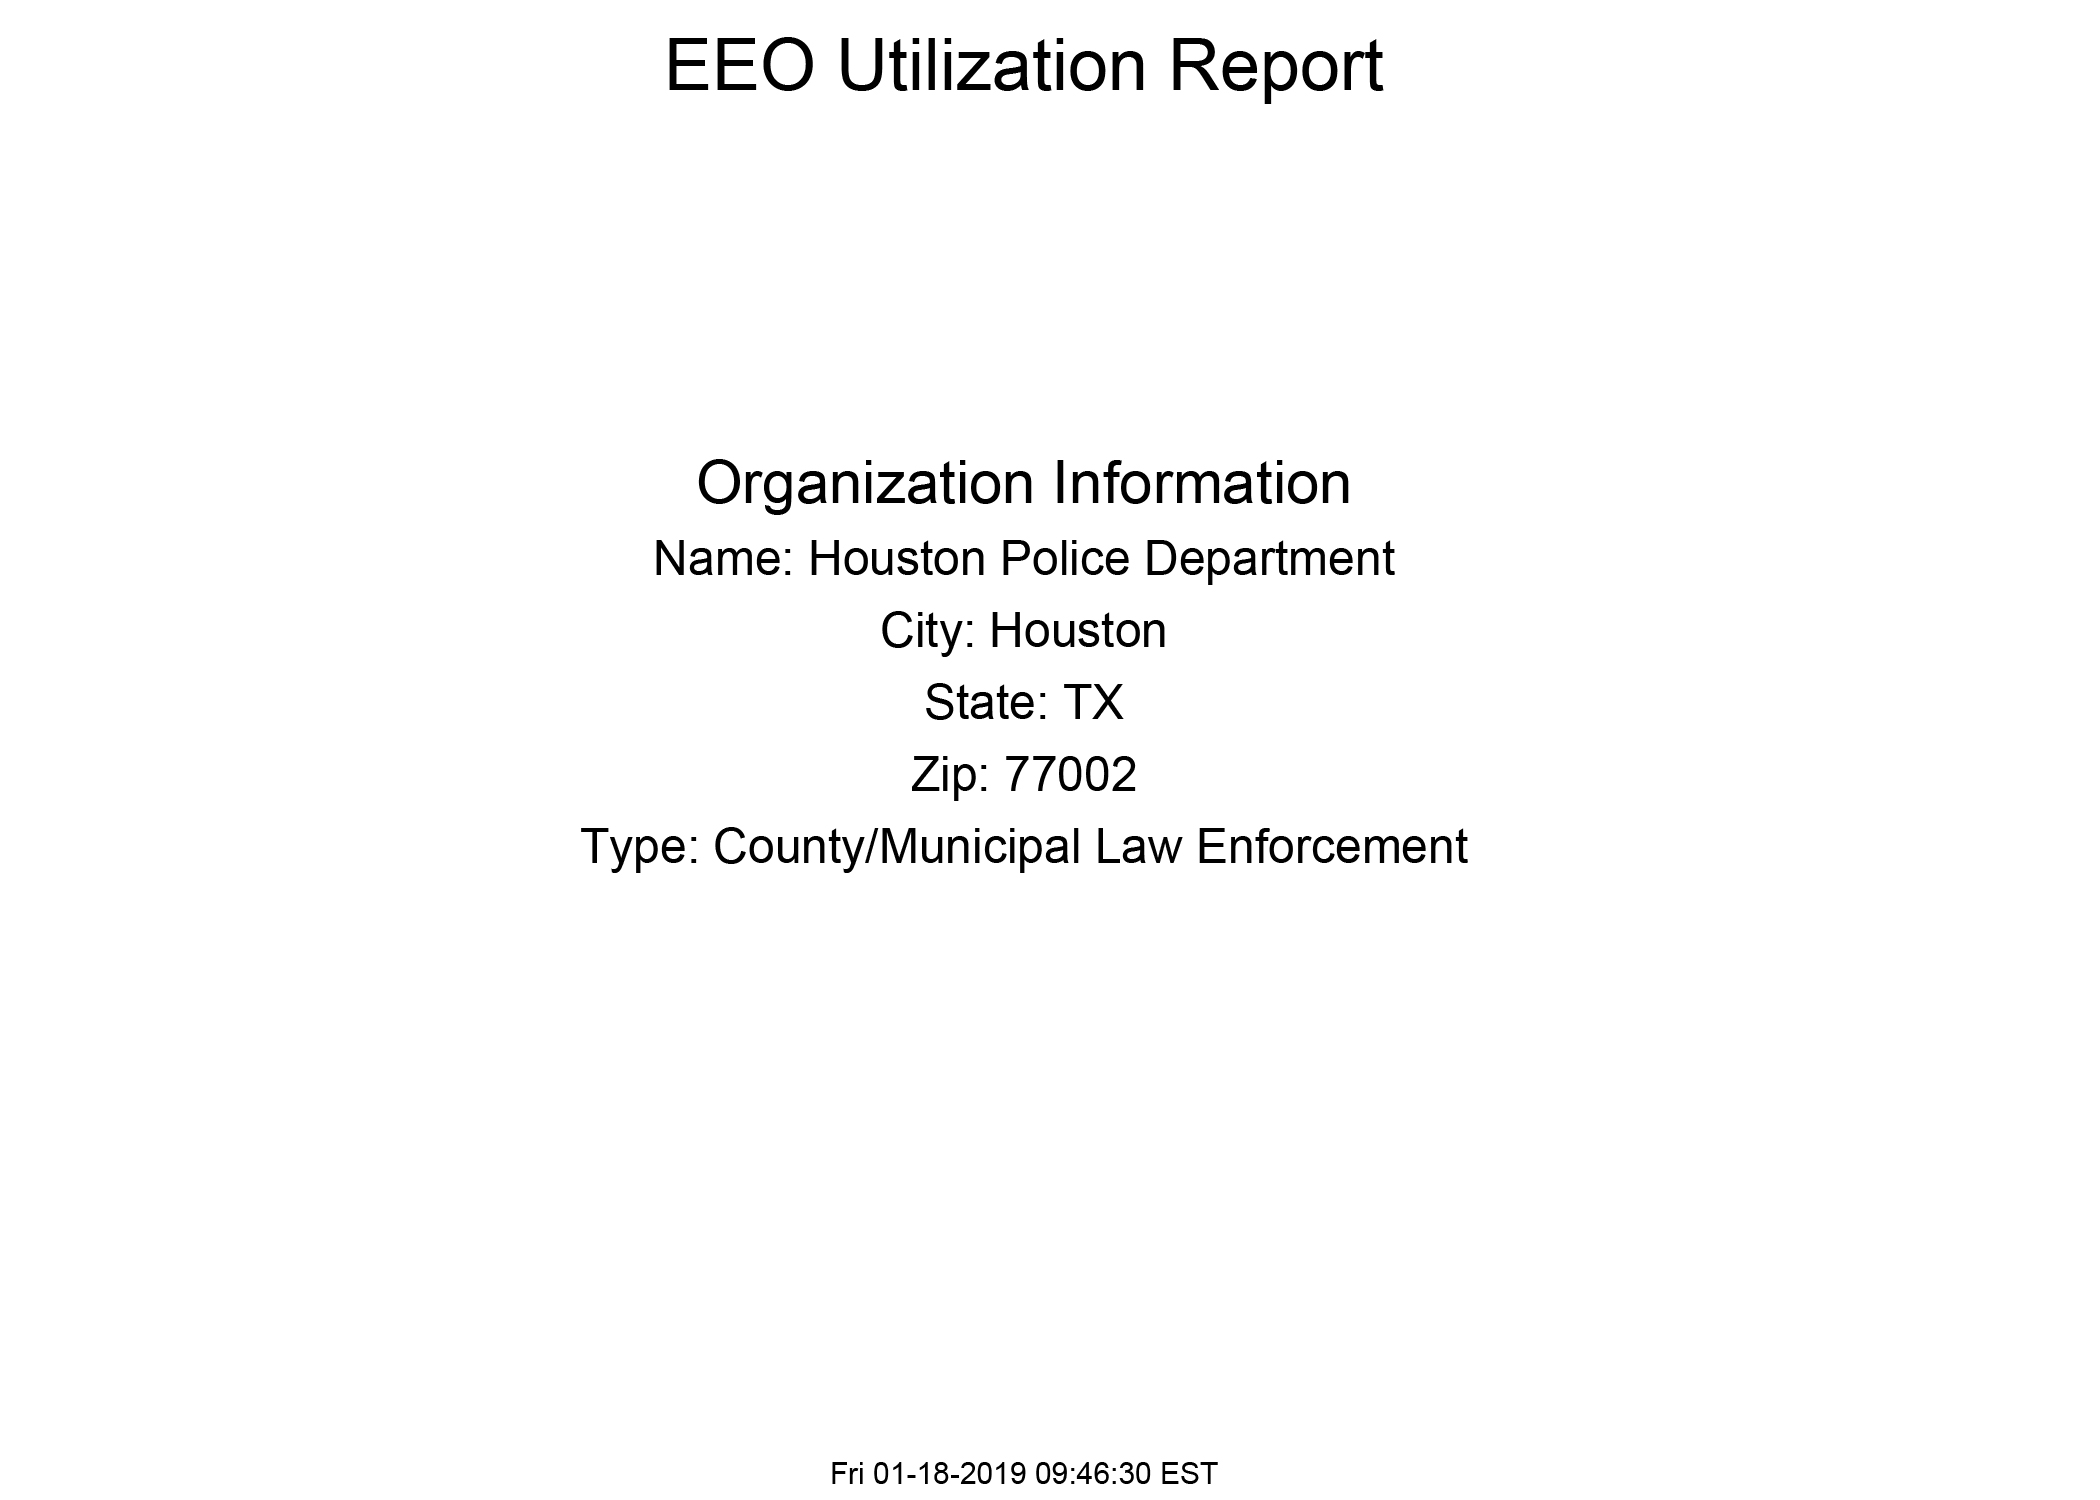 EEOP Utilization Report